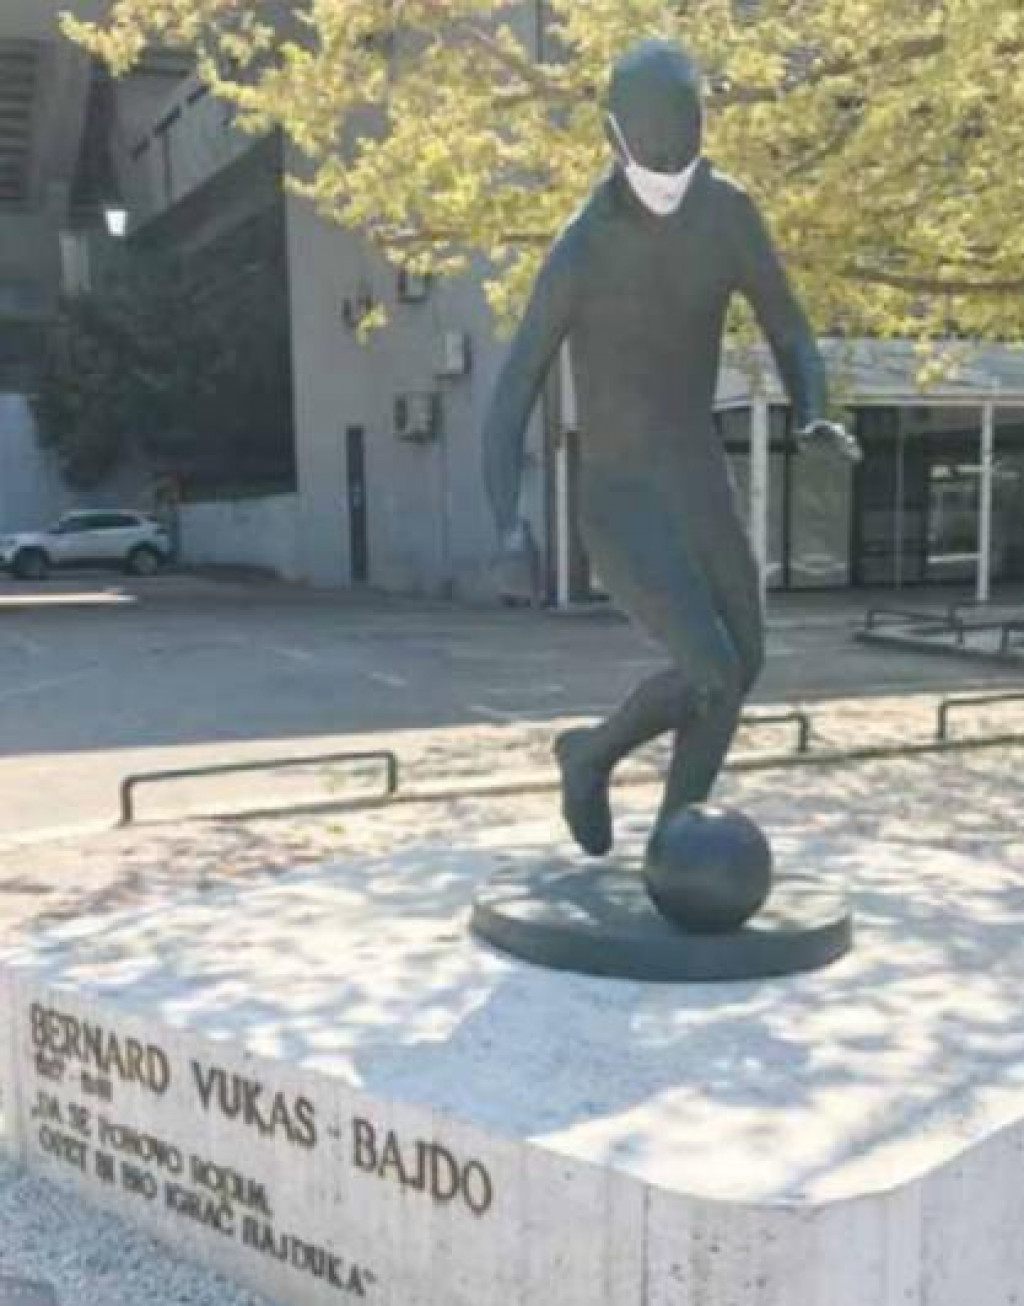 Legendarni spomenik Bernardu Vukasu zaštićen je maskicom